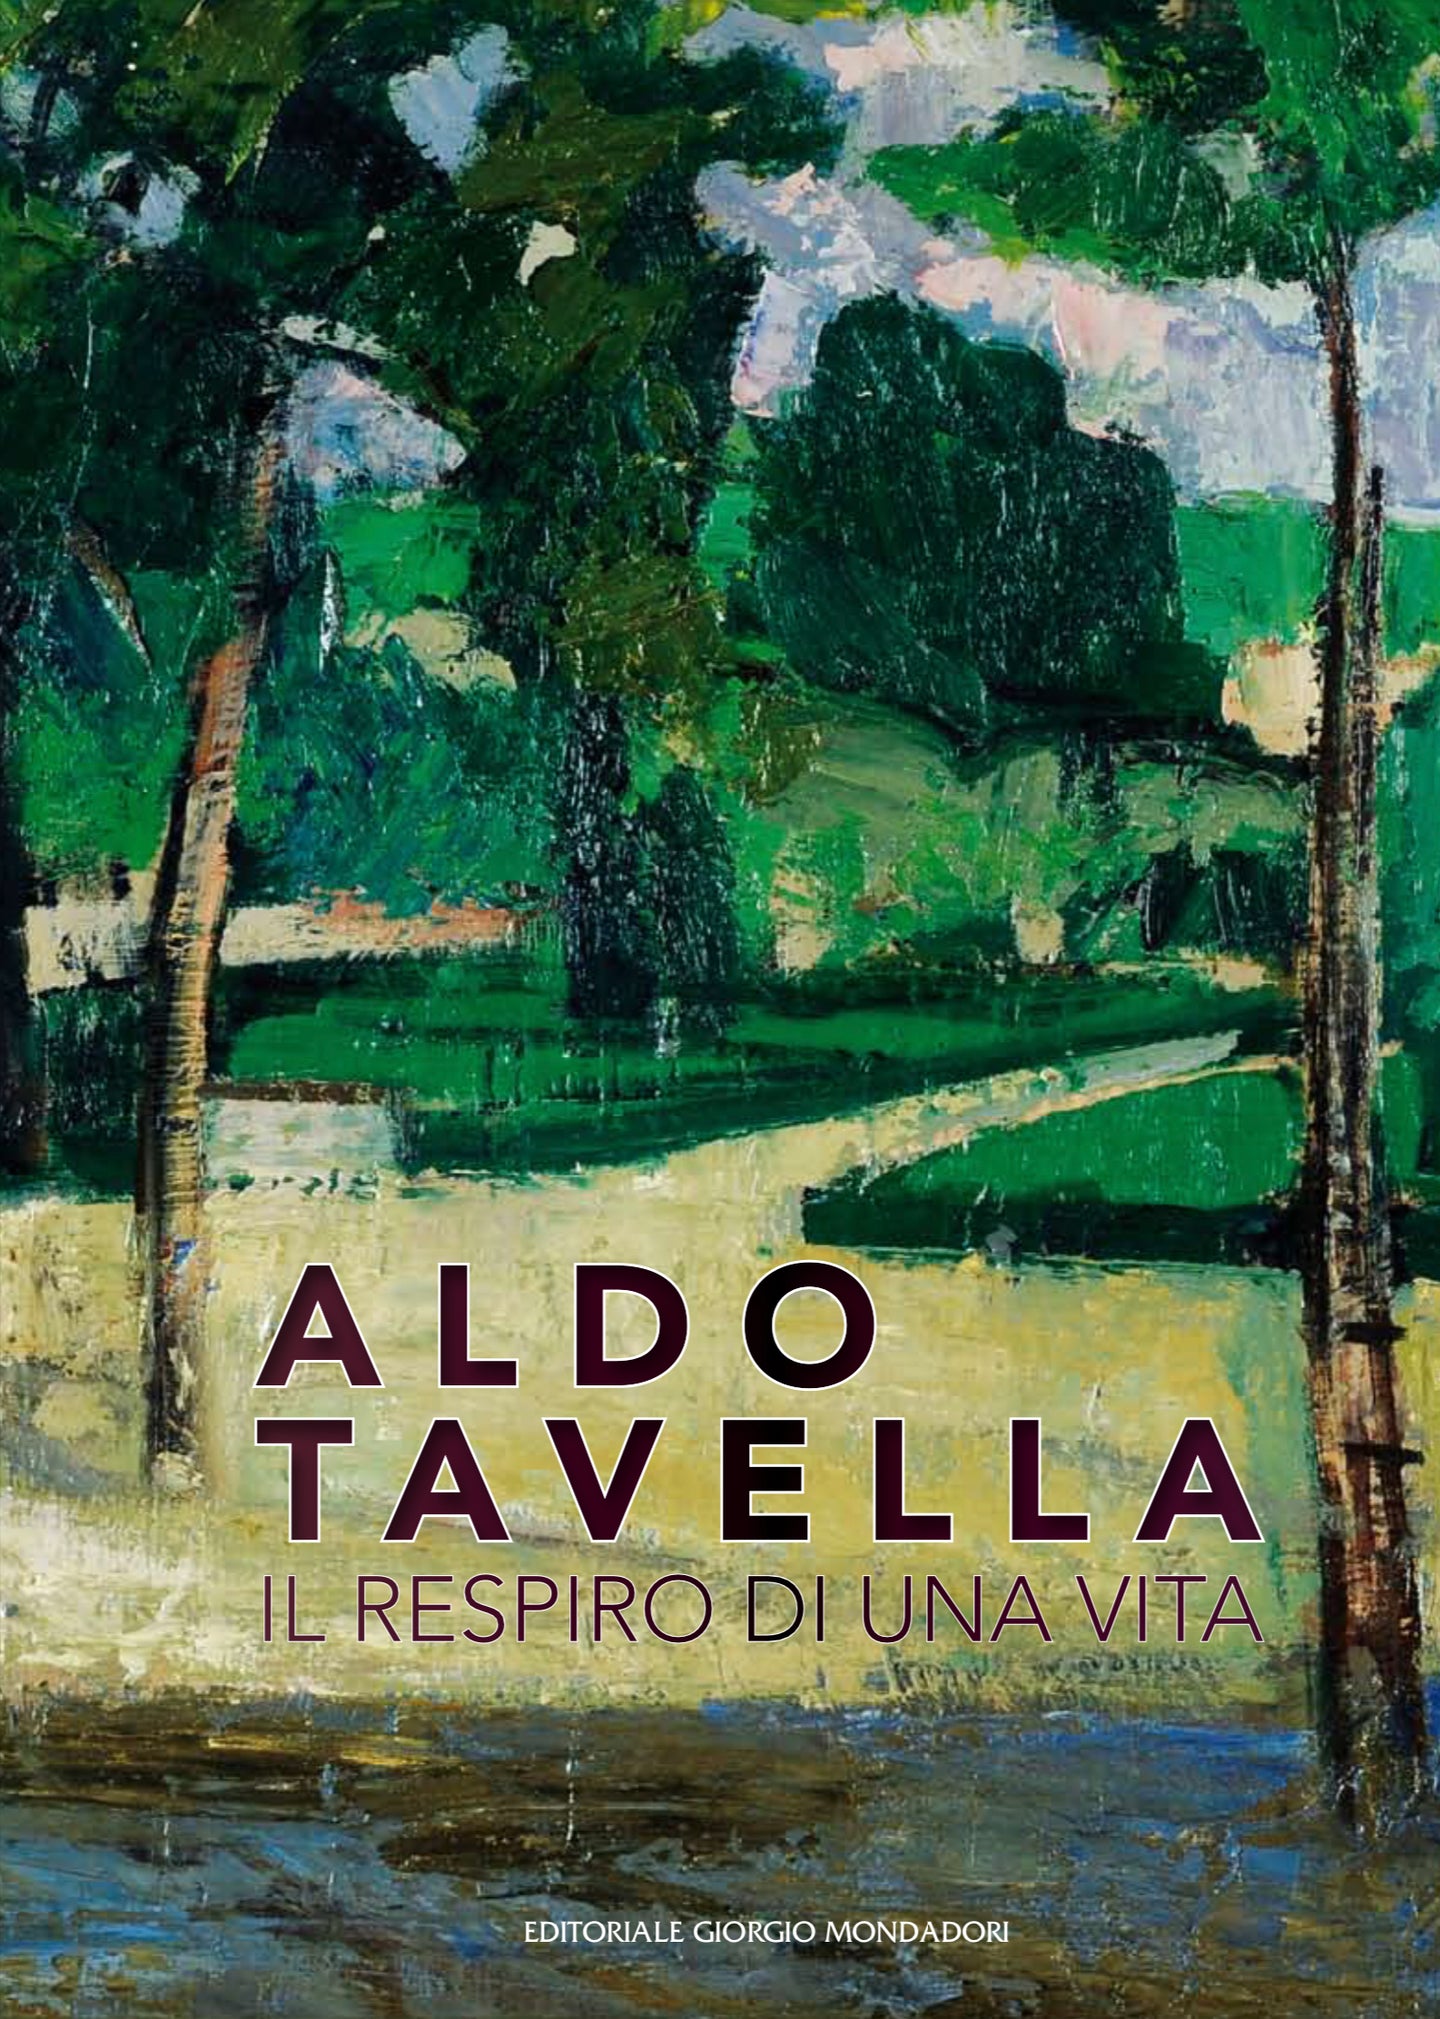 Aldo Tavella: The Breath of a Lifetime